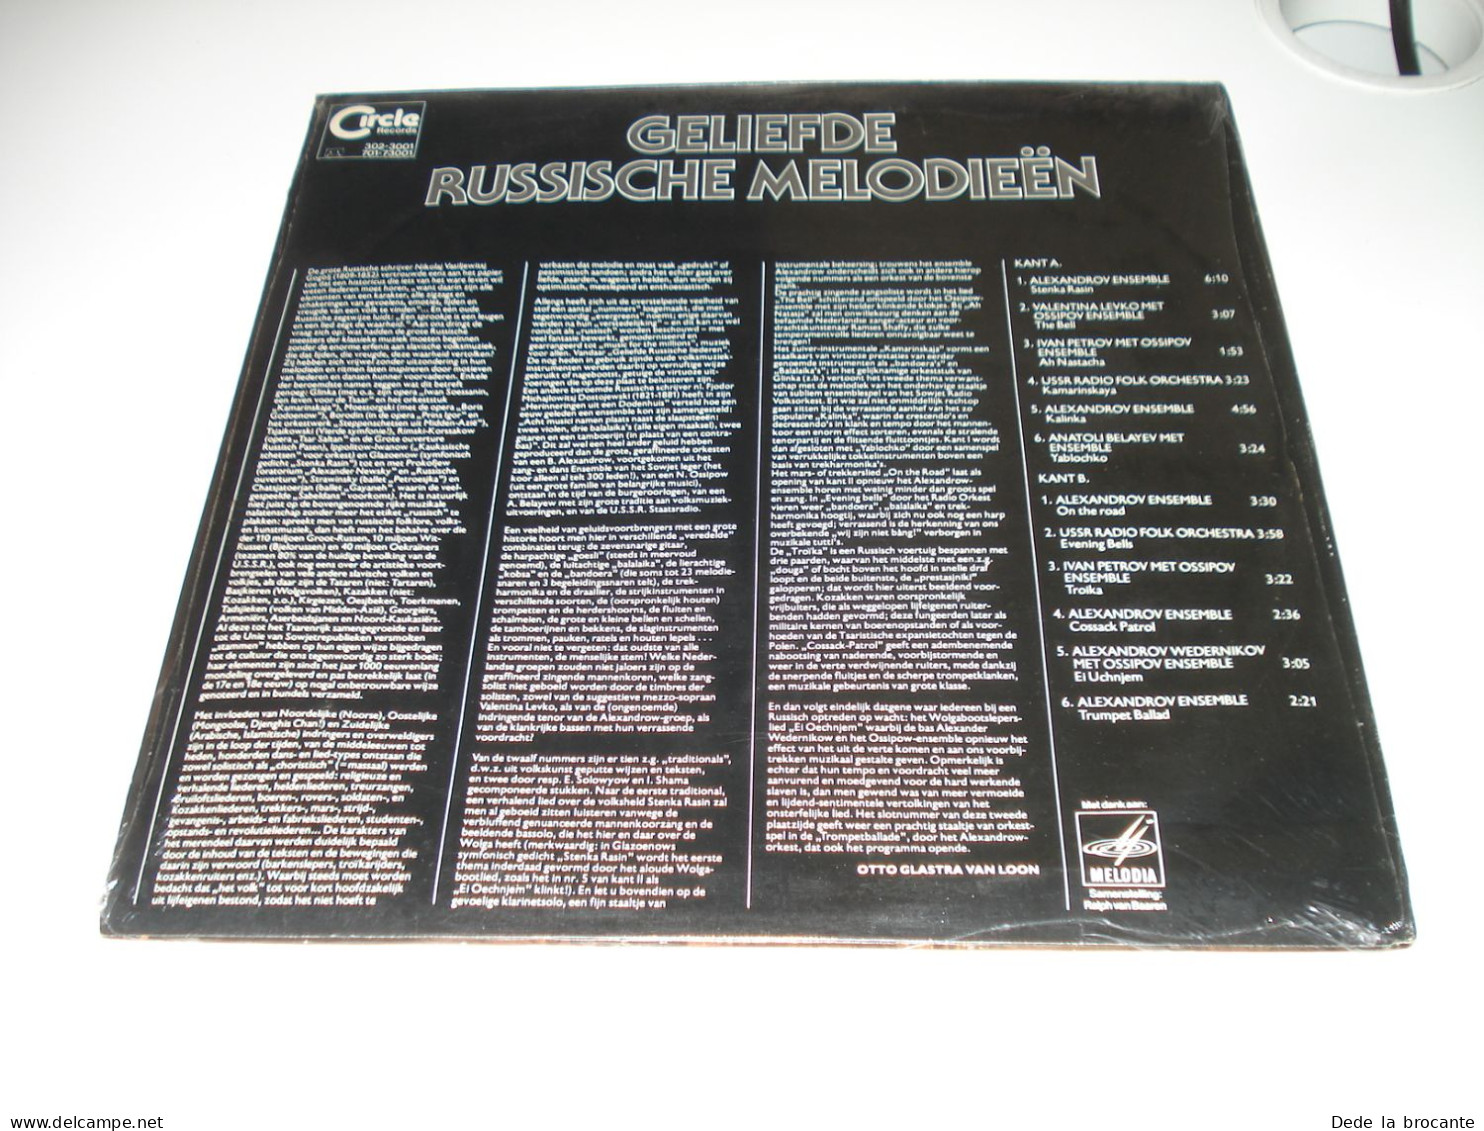 B6 / Geliefde Russische Melodieën - 302-3001 - Holland 1978 - Sealed - MINT - Musiques Du Monde